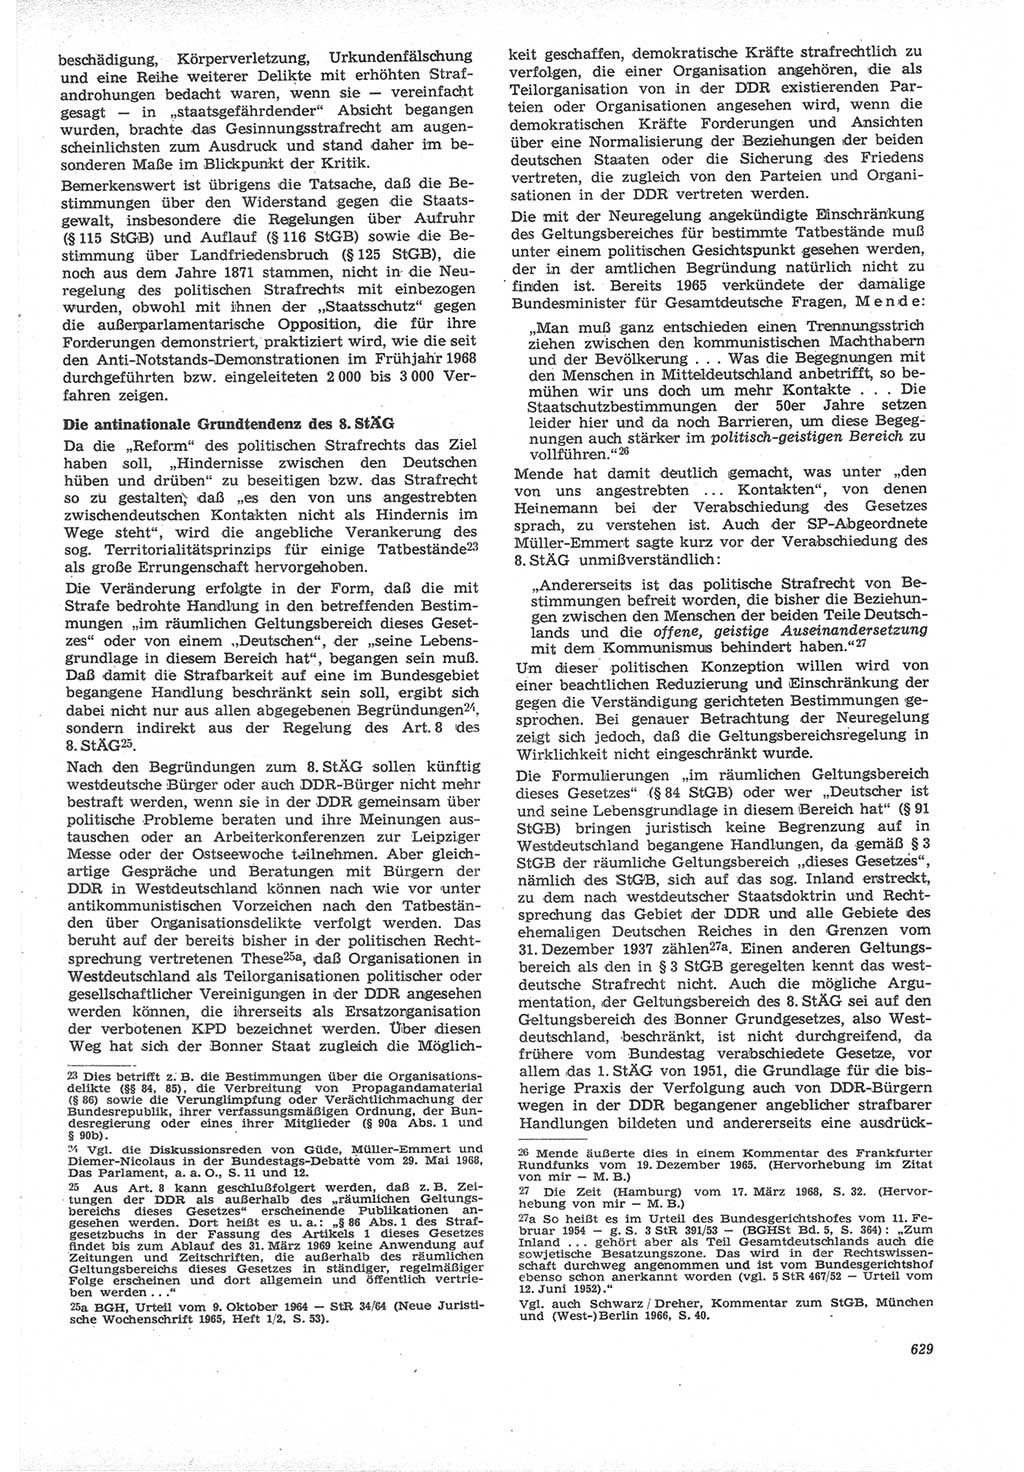 Neue Justiz (NJ), Zeitschrift für Recht und Rechtswissenschaft [Deutsche Demokratische Republik (DDR)], 22. Jahrgang 1968, Seite 629 (NJ DDR 1968, S. 629)